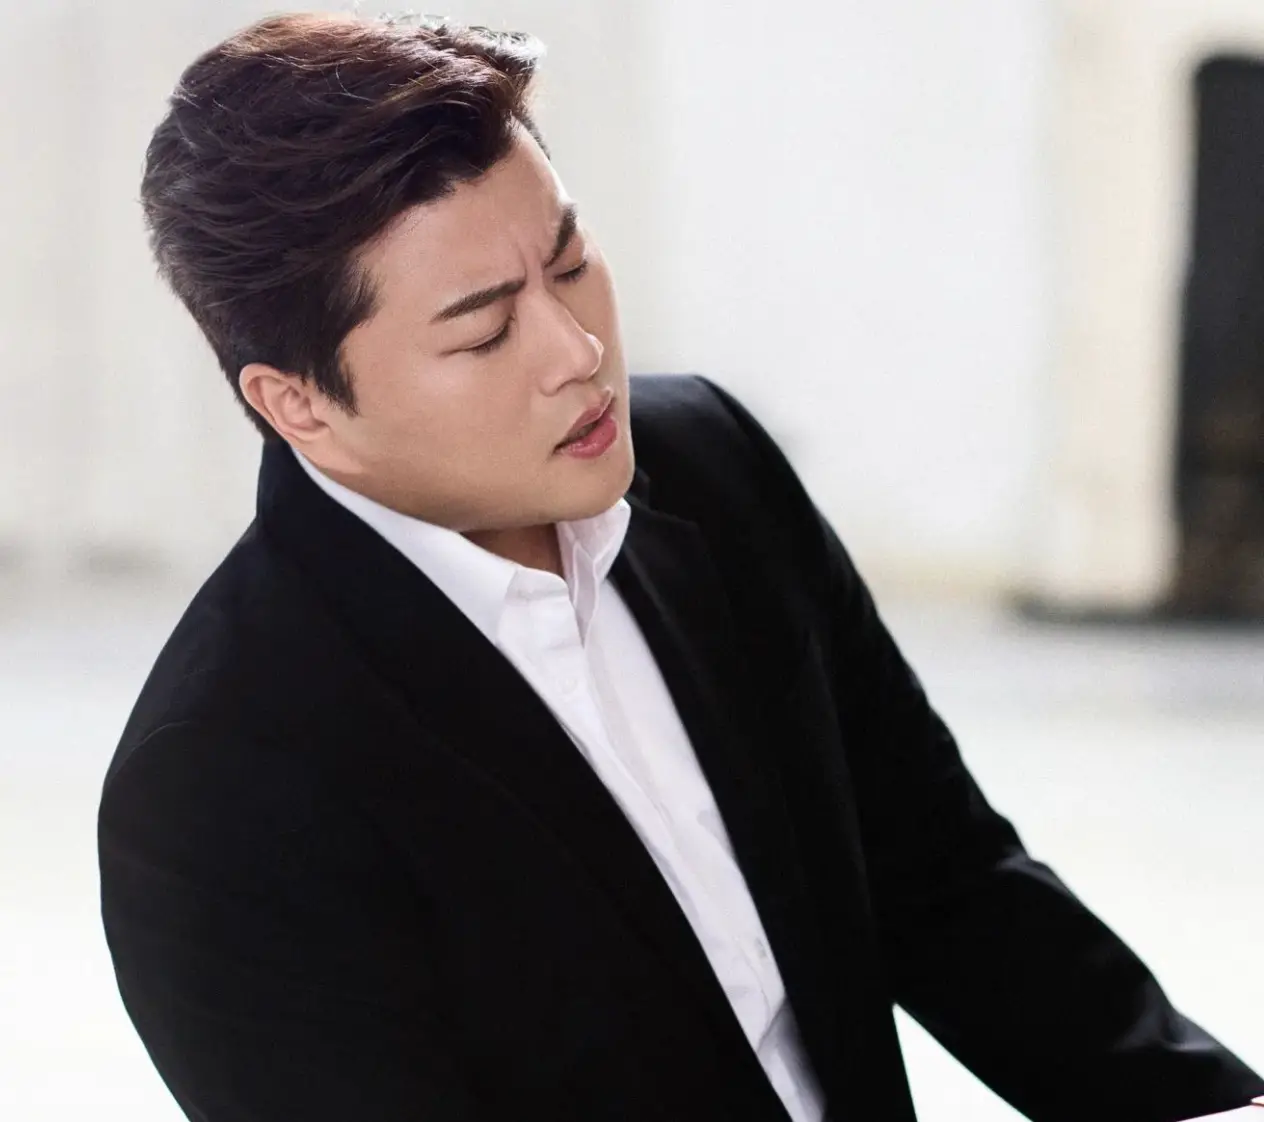 검은 쟈켓 흰 셔츠를 입고 피아노를 치며 노래하는 김호중